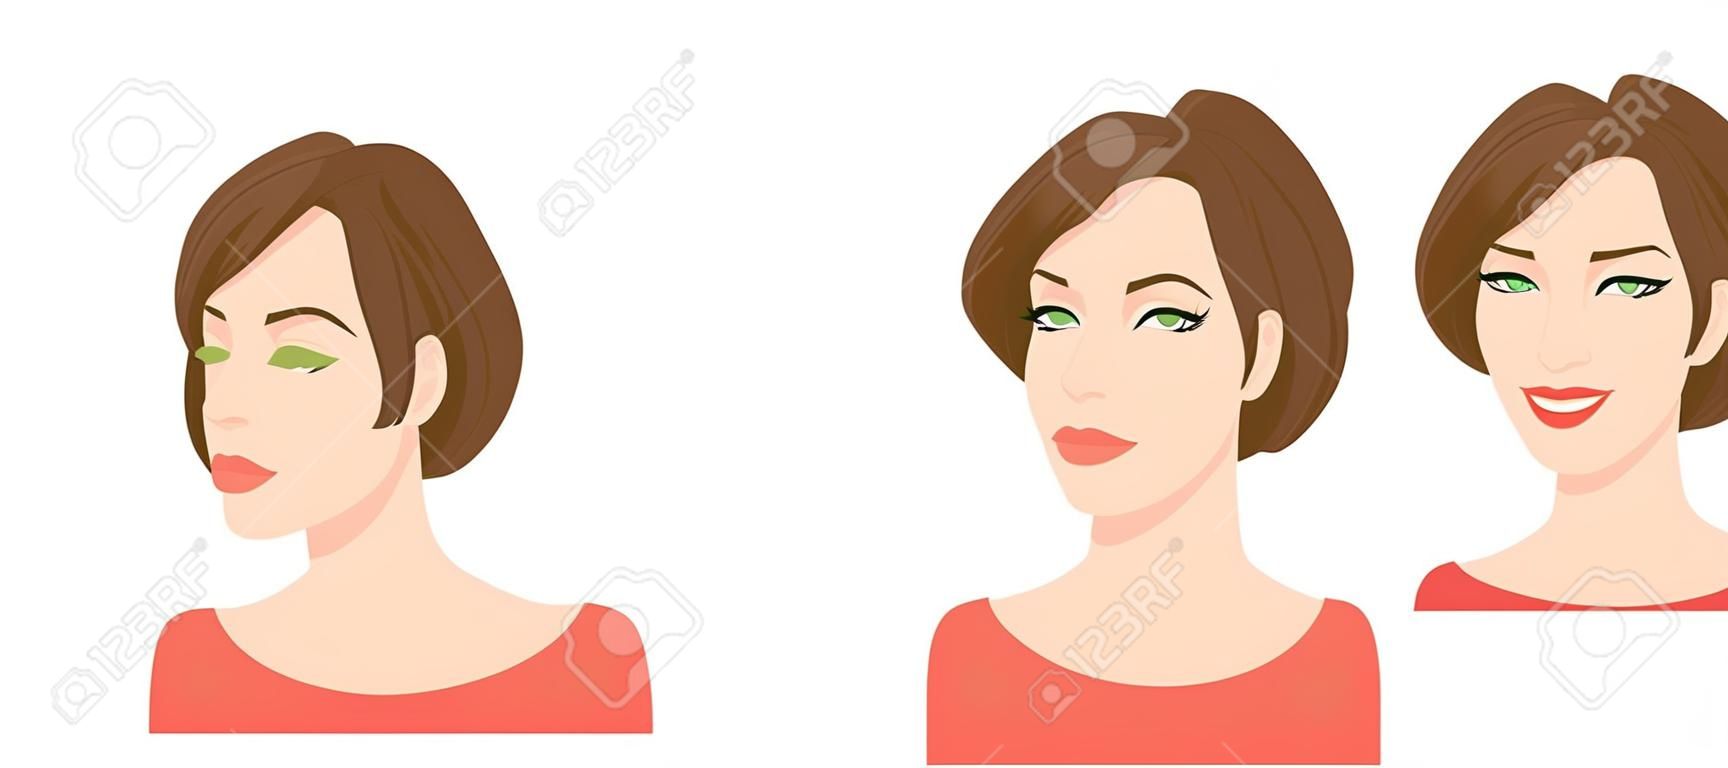 Vector l'illustrazione del fronte della bella donna su fondo bianco, varie teste dei giri Fronte e profilo.